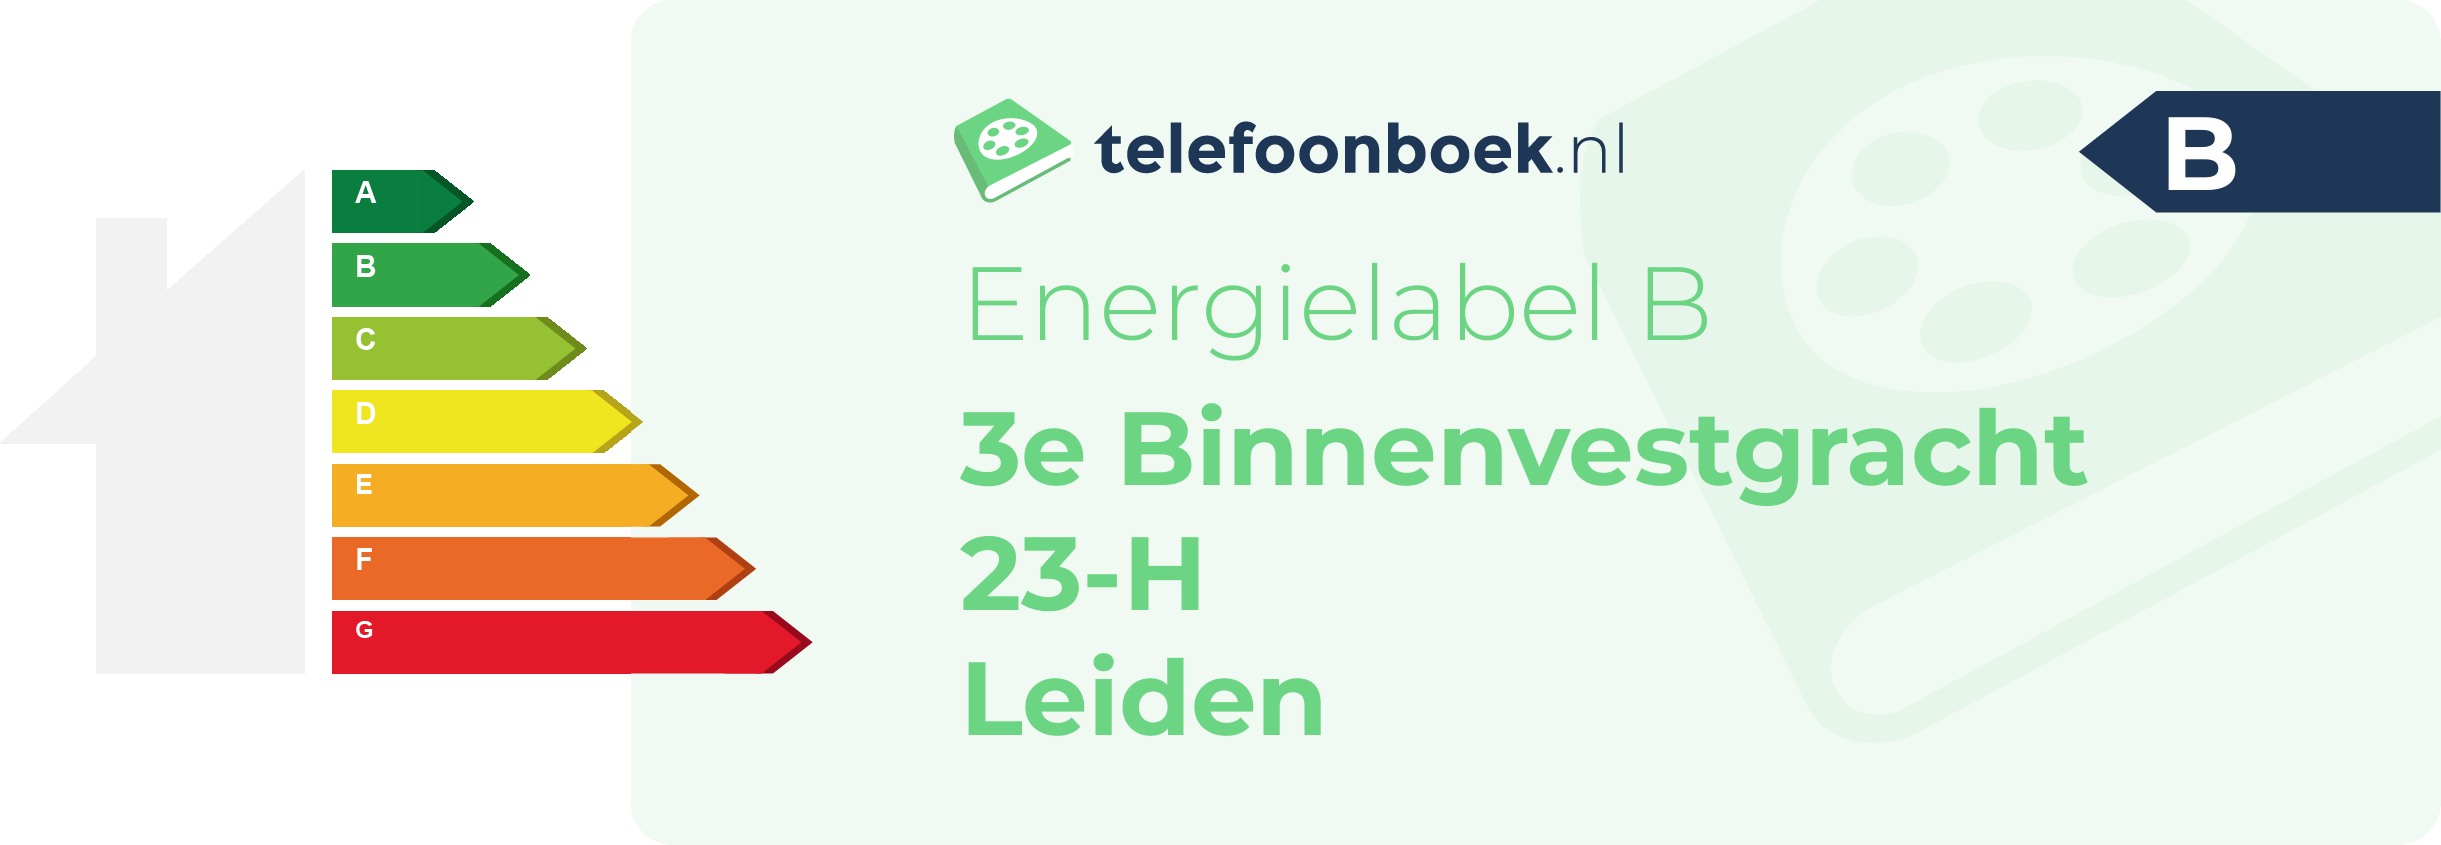 Energielabel 3e Binnenvestgracht 23-H Leiden